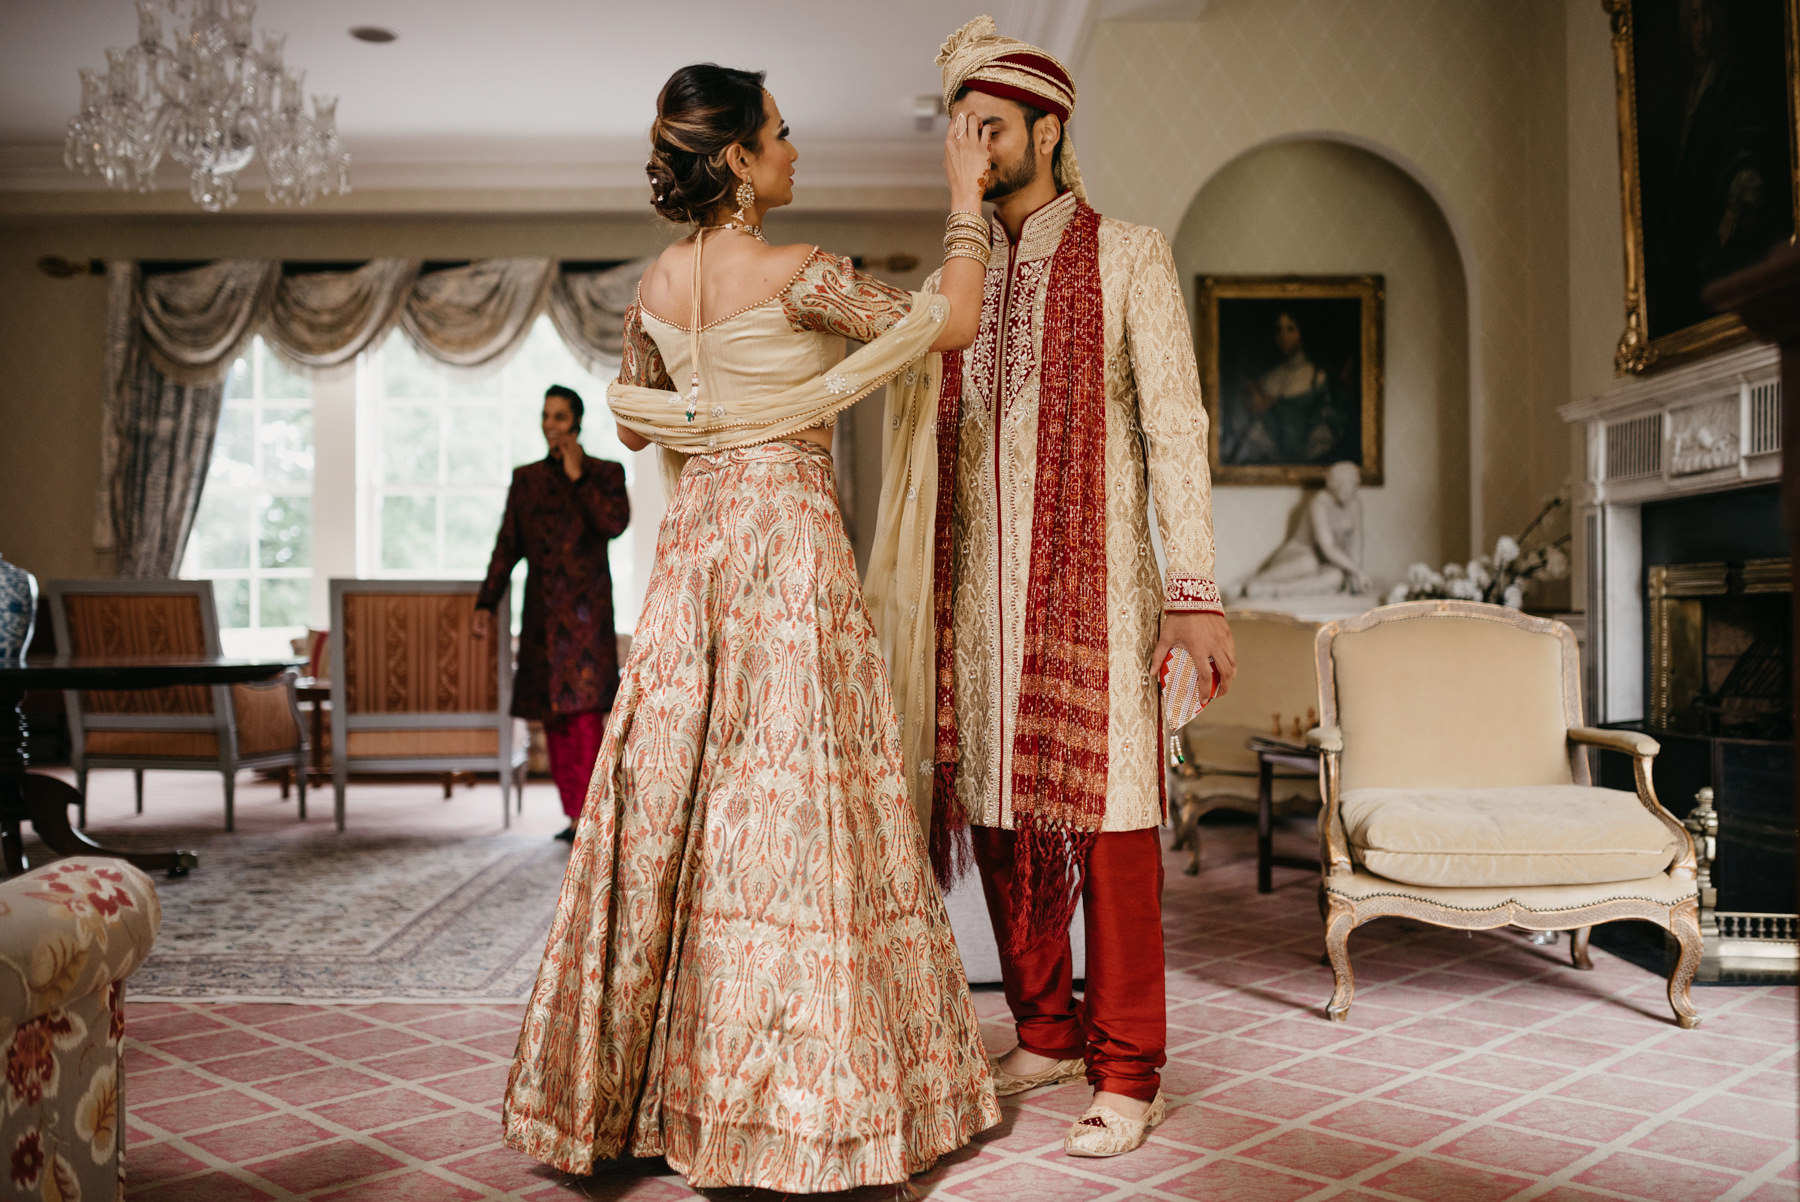 Vibrant Hindu Irish wedding photography